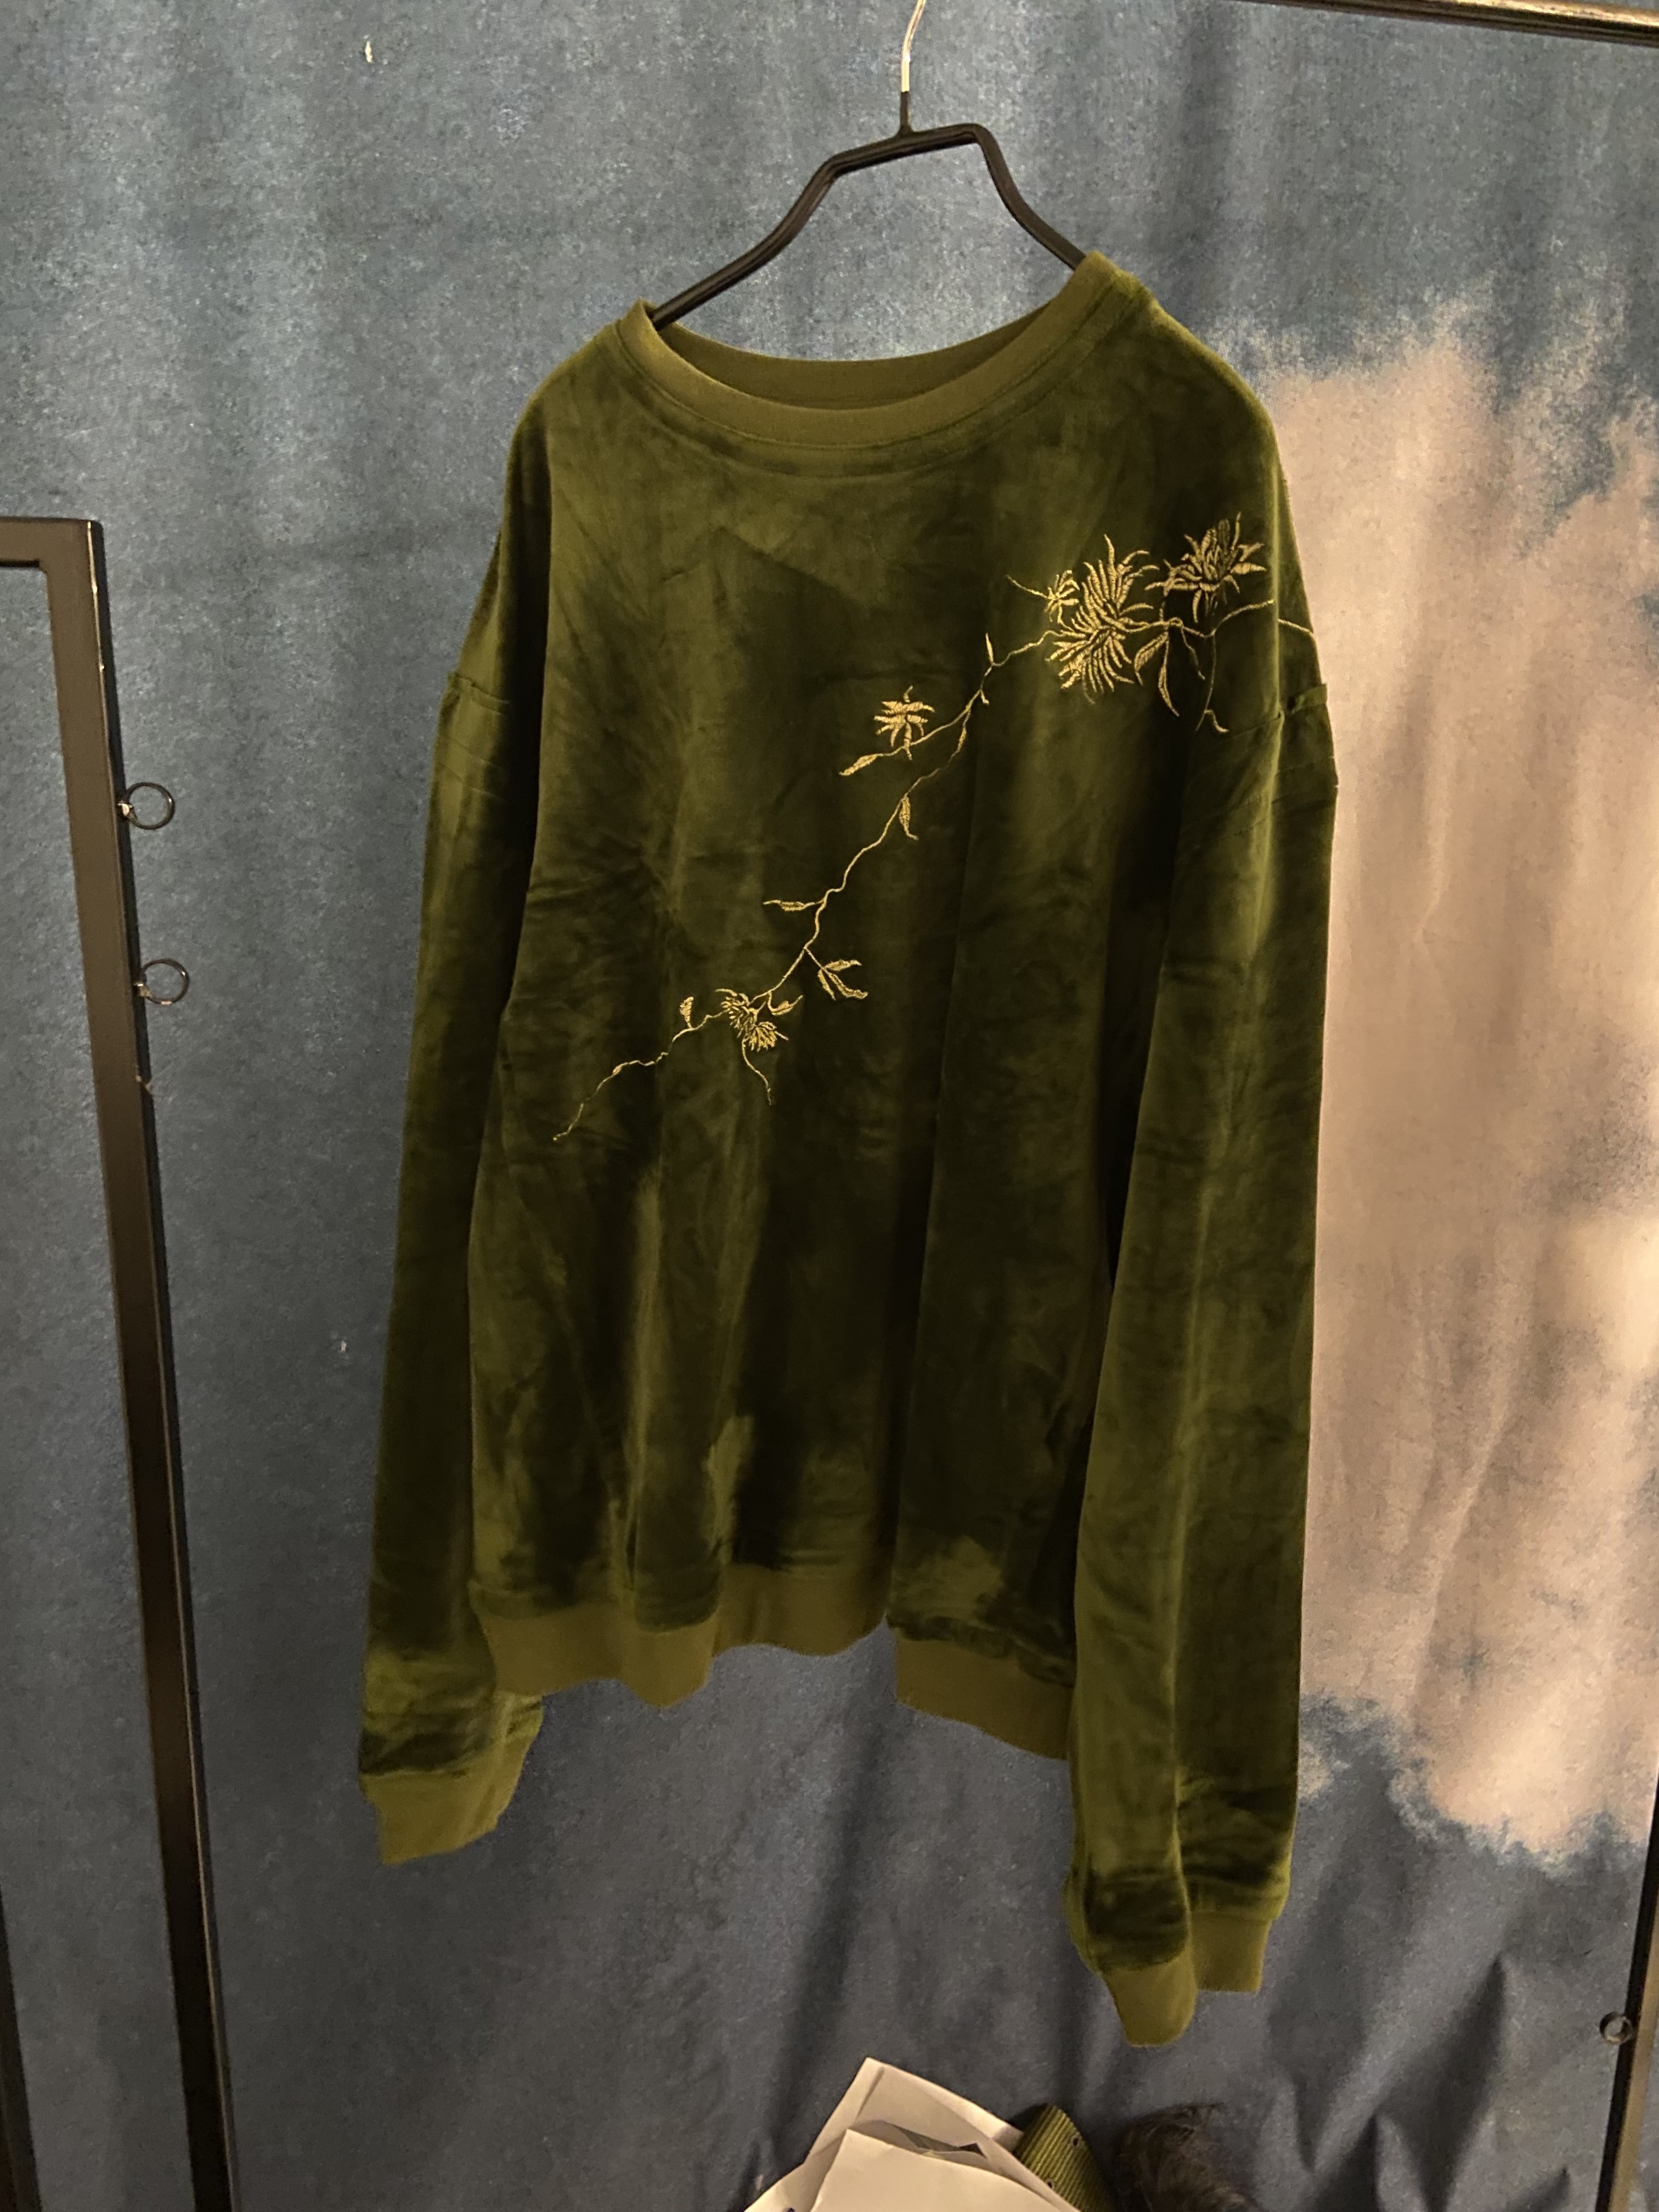 FW18 Velvet Green Sweater - 1